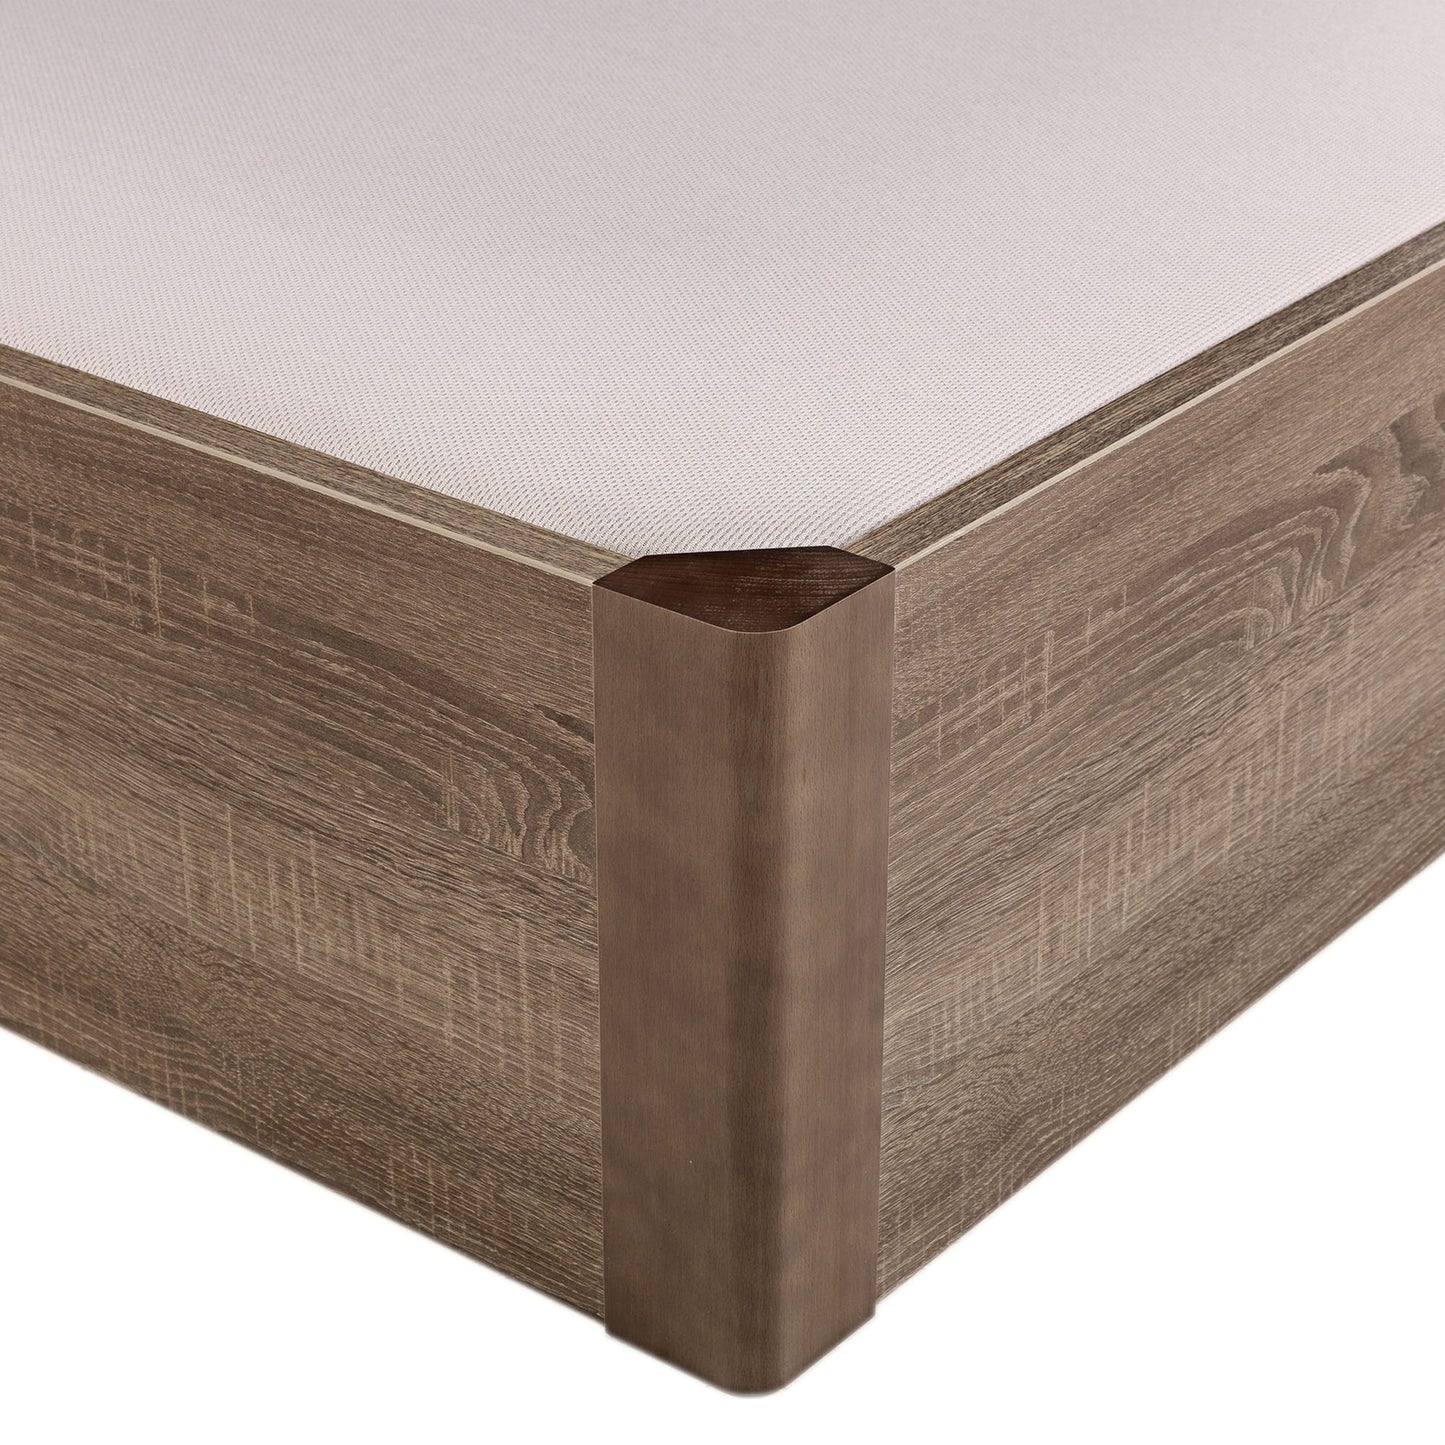 Canapé abatible de madera tapa única de color roble - DESIGN - 150x190